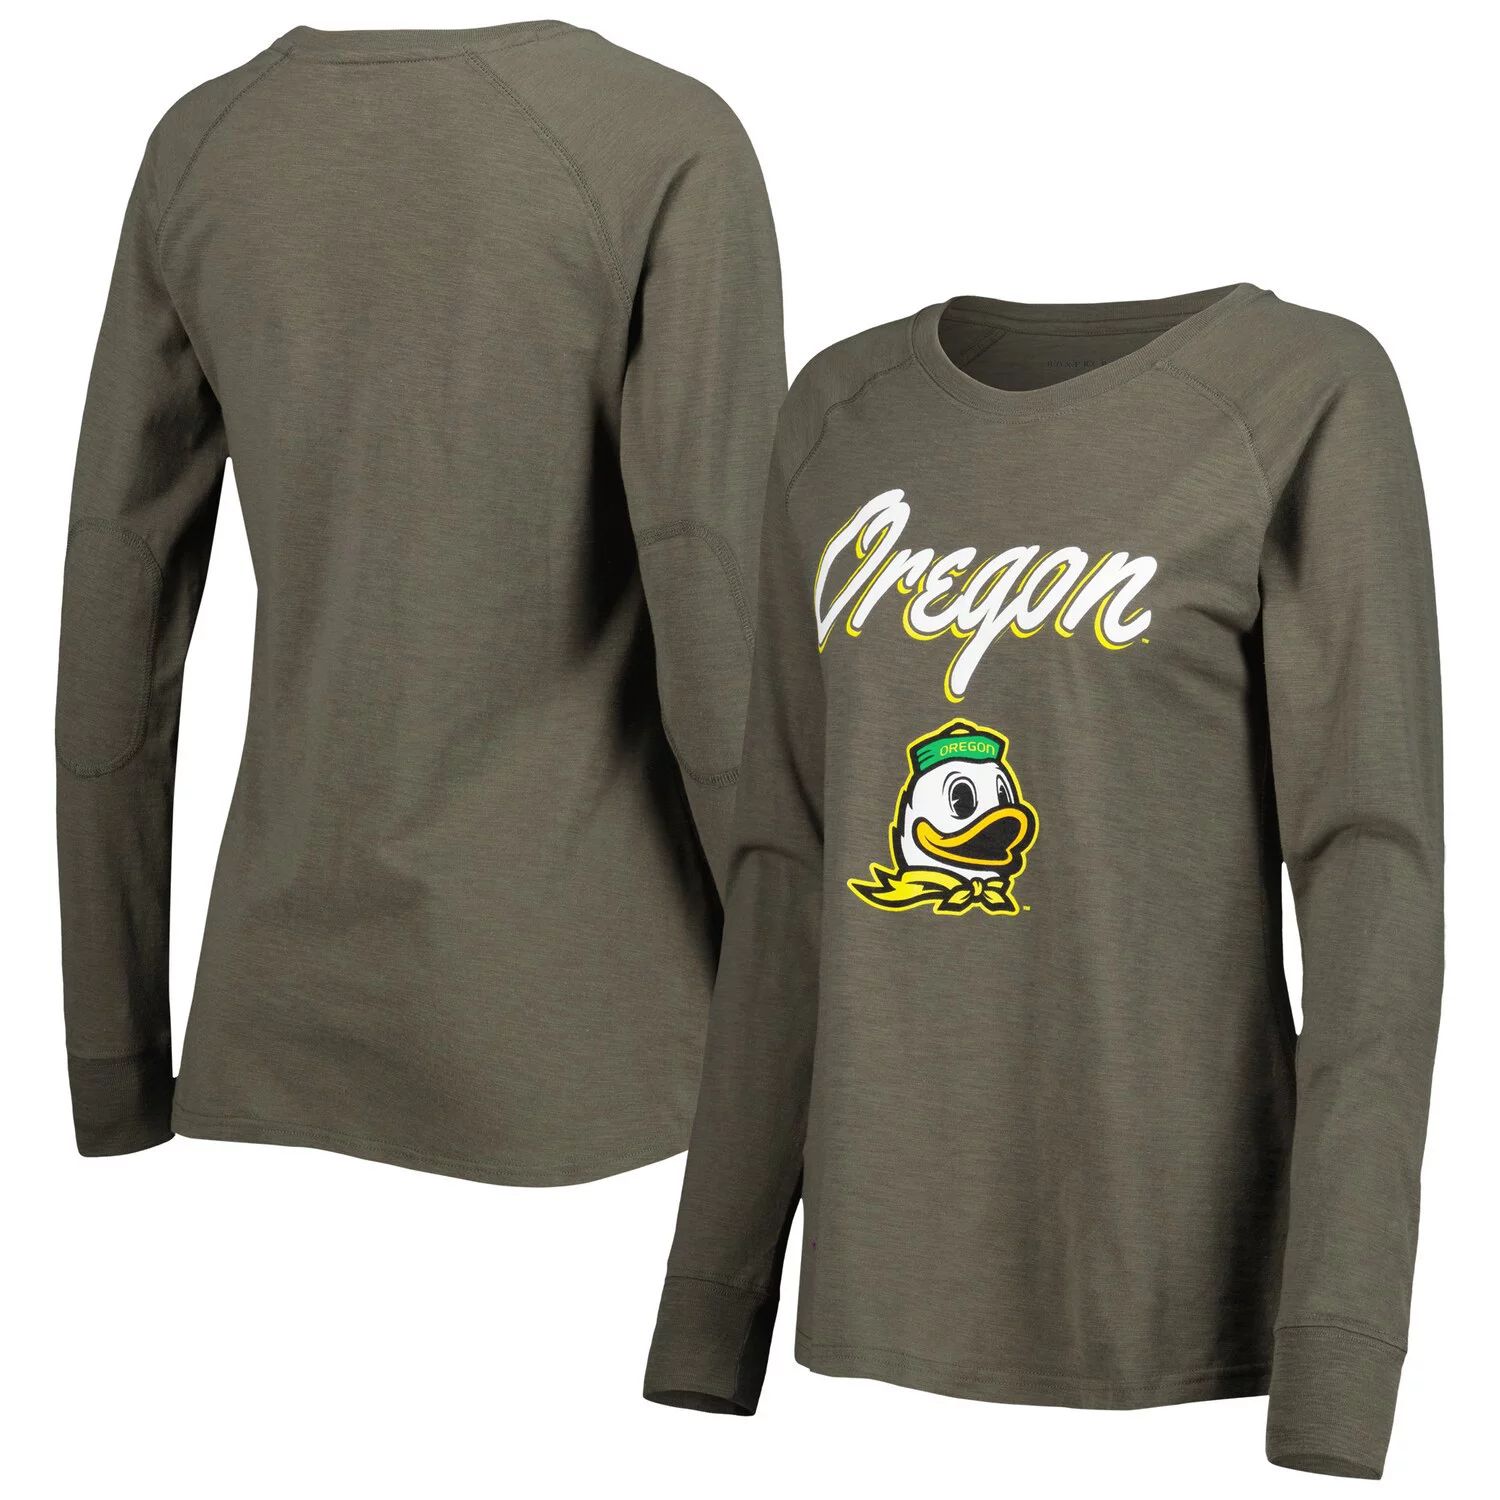 Женская оливковая футболка Oregon Ducks Payton с нашивкой на локте Slub реглан с длинными рукавами